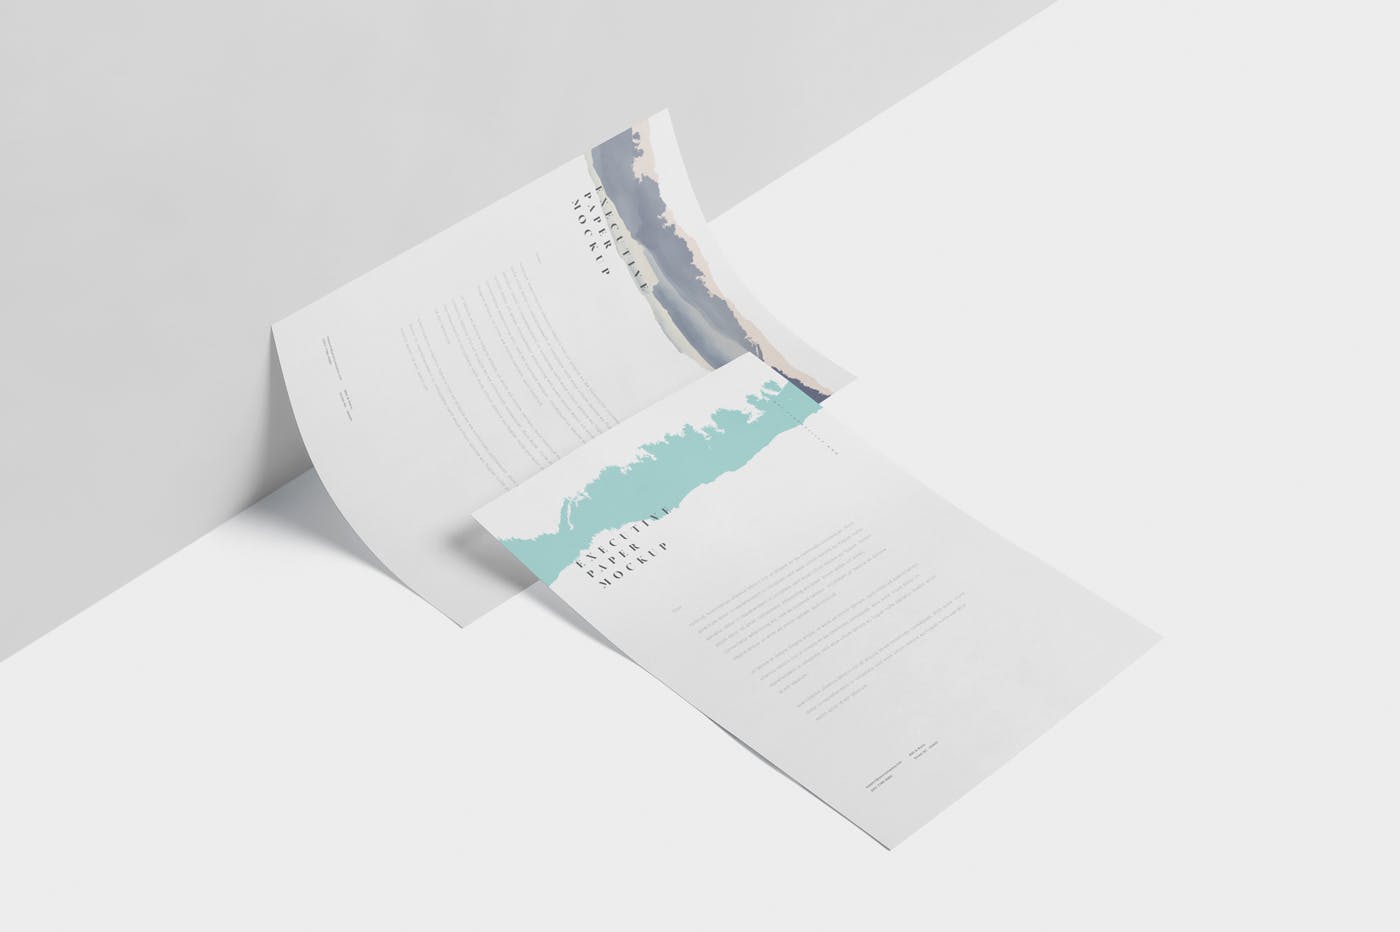 企业宣传单张设计效果图样机第一素材精选 Executive Paper Mockup – 7×10 Inch Size插图(2)